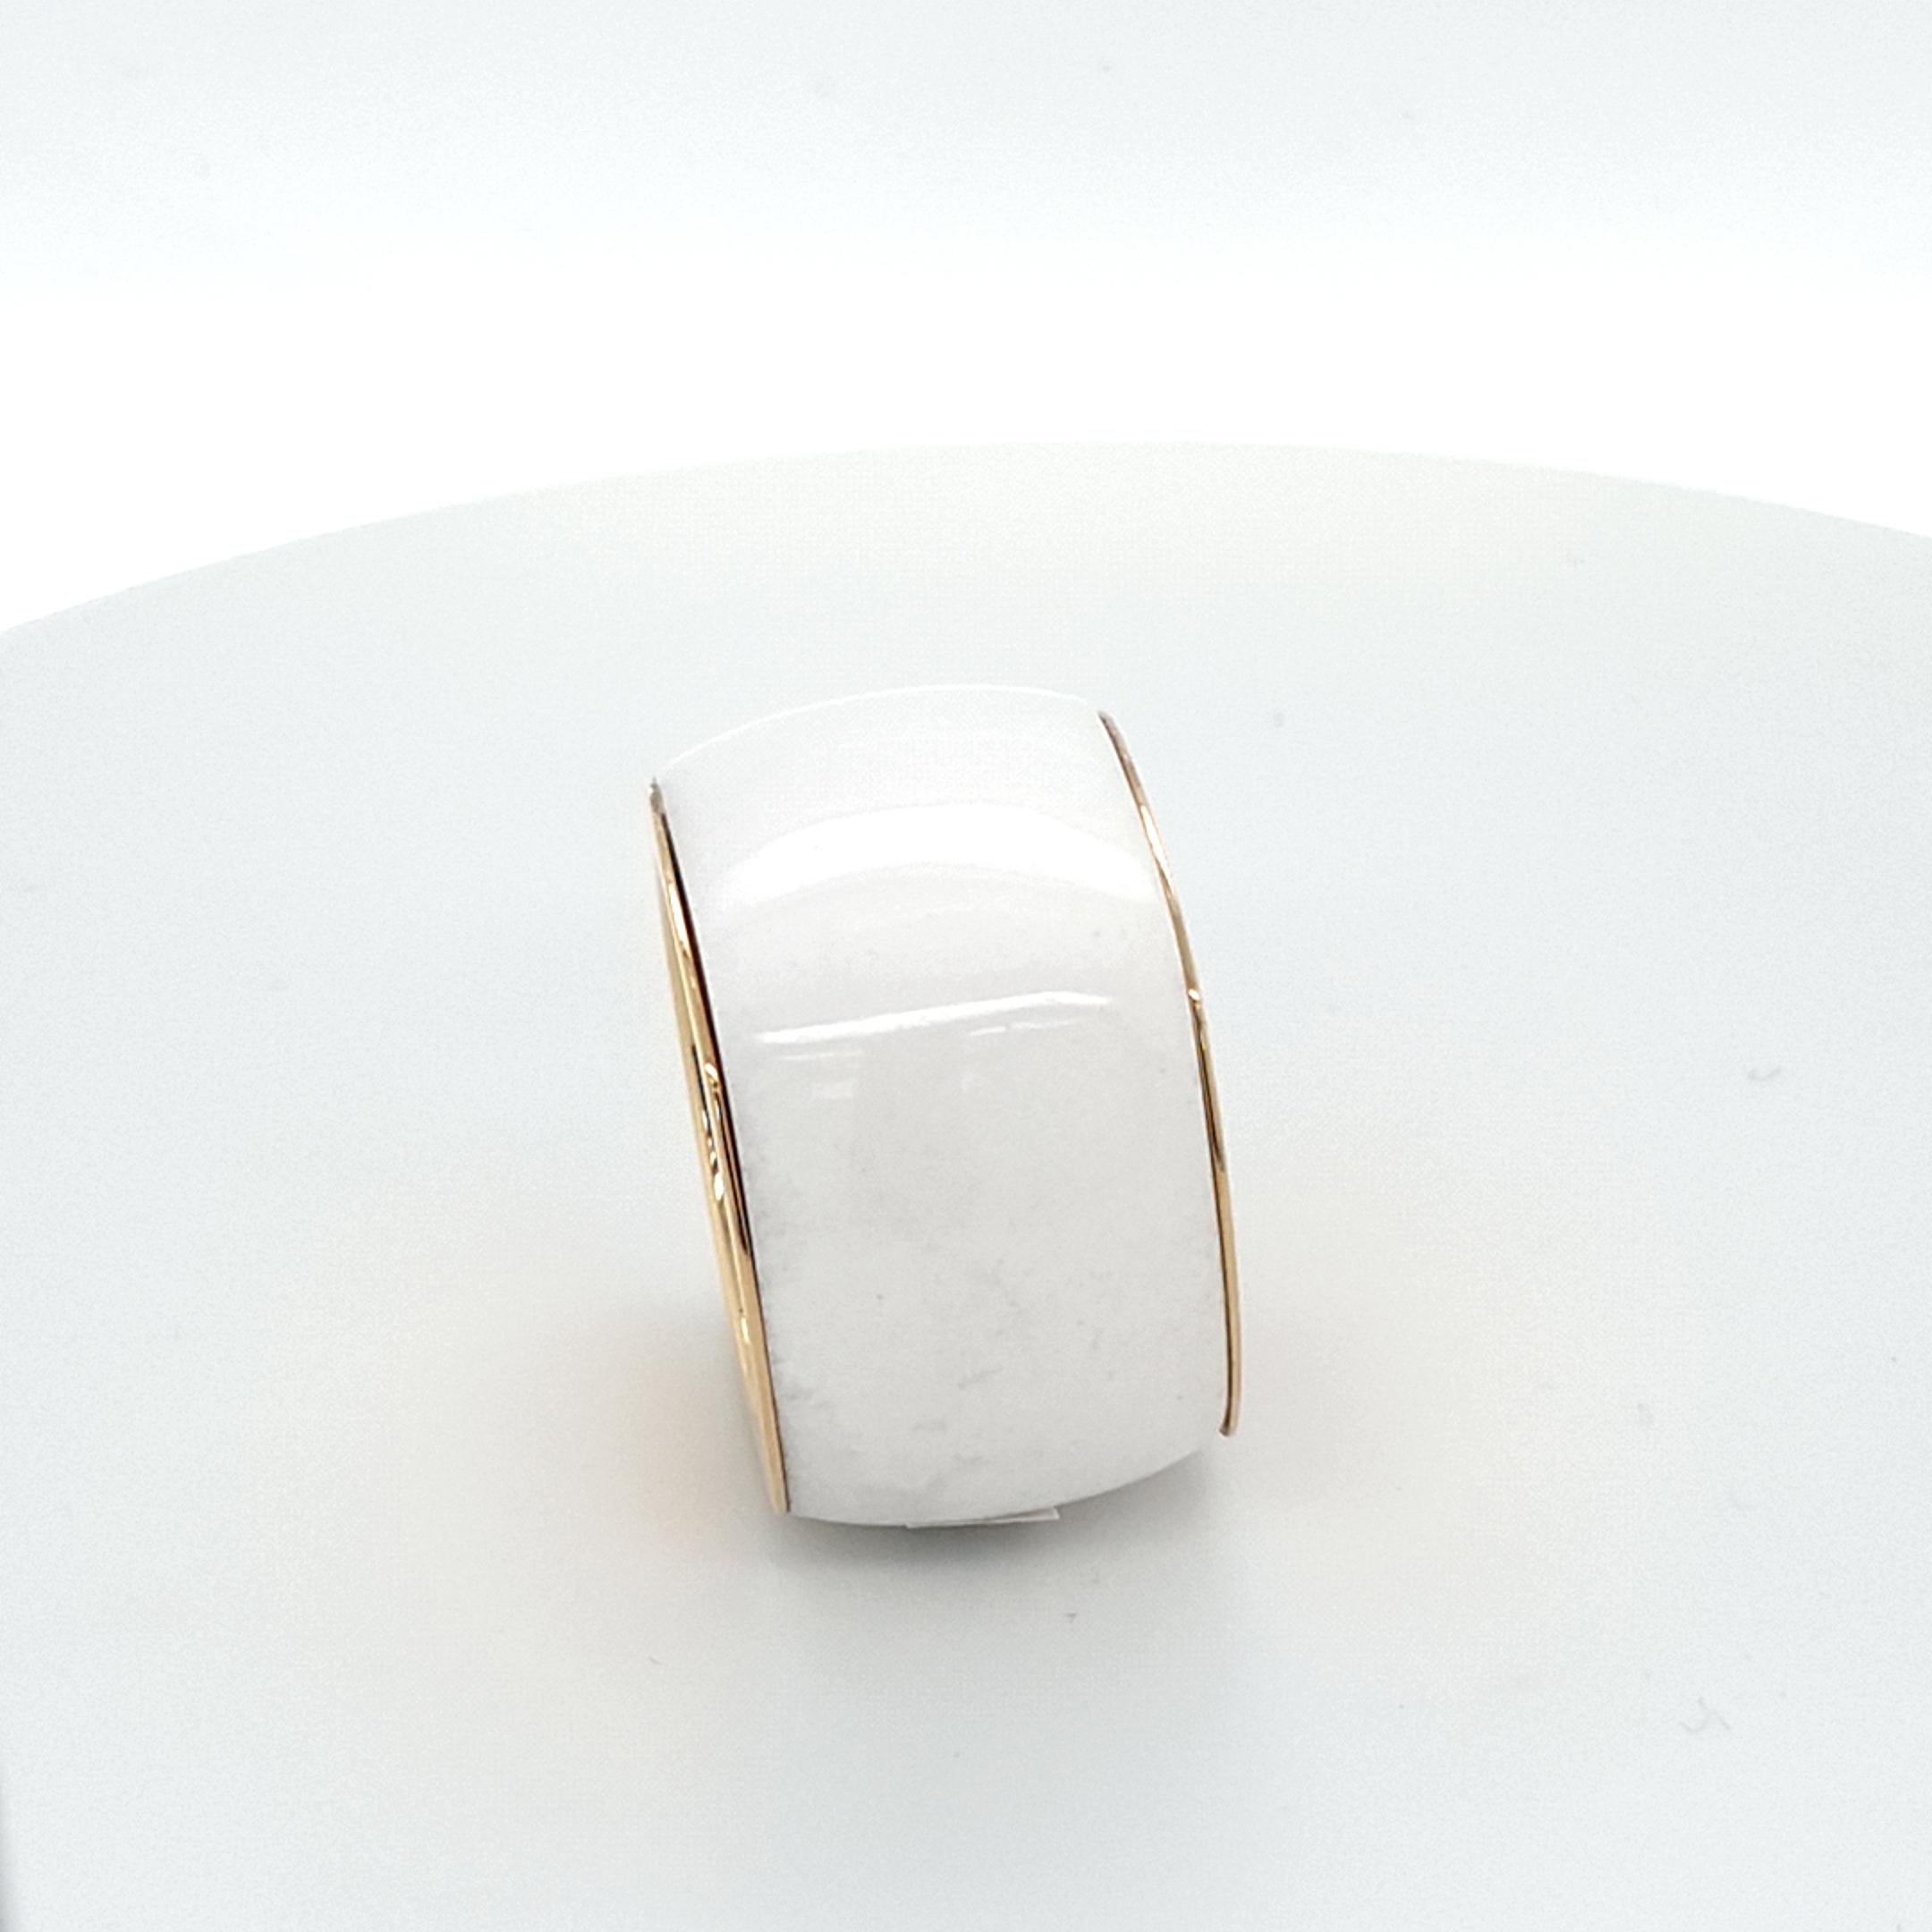 Dieser Ring aus natürlichem weißem Achat mit 18 Karat Gelbgold ist vollständig handgefertigt.
Sowohl das Schneiden als auch die Vergoldung sind in deutscher Qualität gefertigt. 
Es ist sehr schwierig, einen geeigneten schönen weißen Naturachat zu